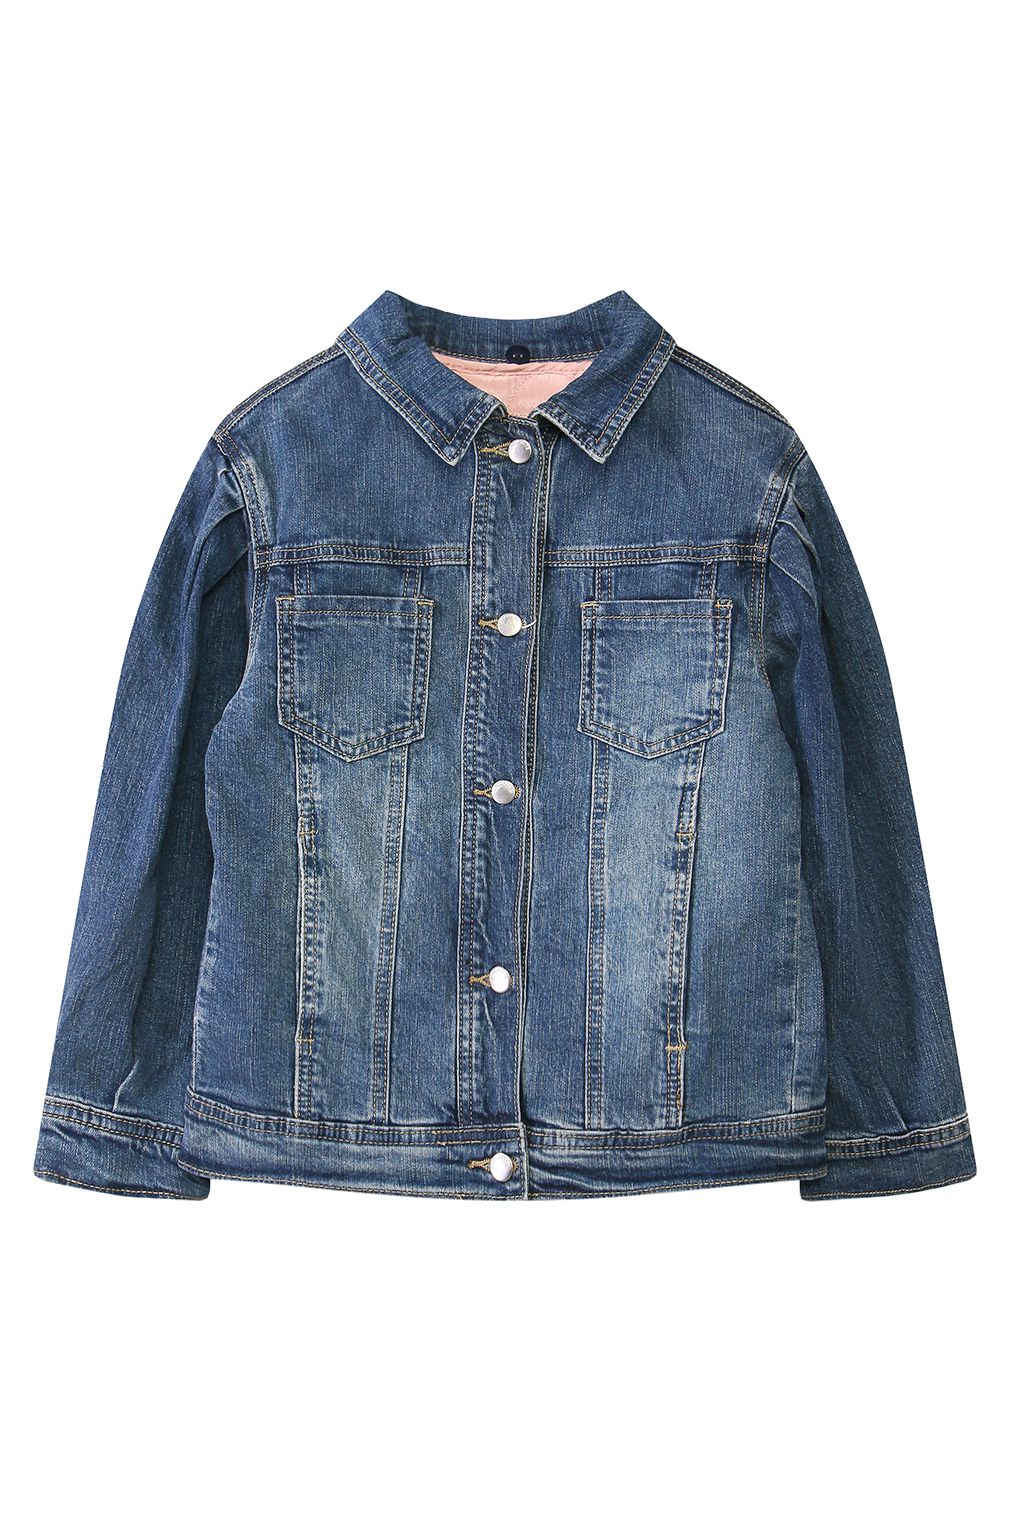 Куртка джинсовая для девочек Choupette, голубой 140р.